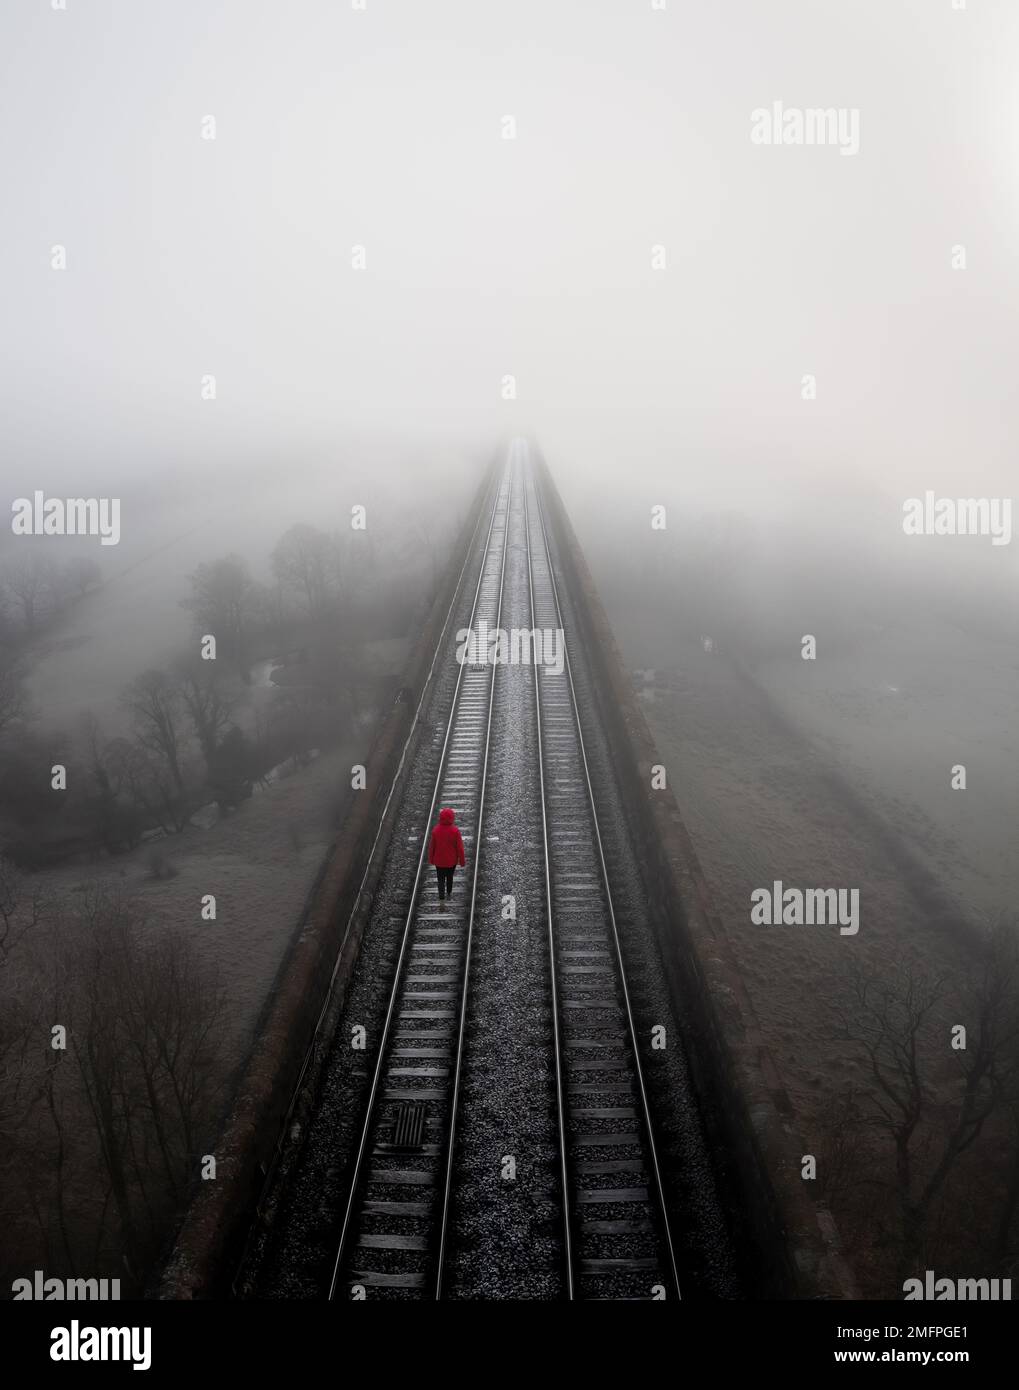 Paisaje aéreo de vías ferroviarias que se desvanecen en la distancia con una persona deprimida suicida caminando en desesperación Foto de stock